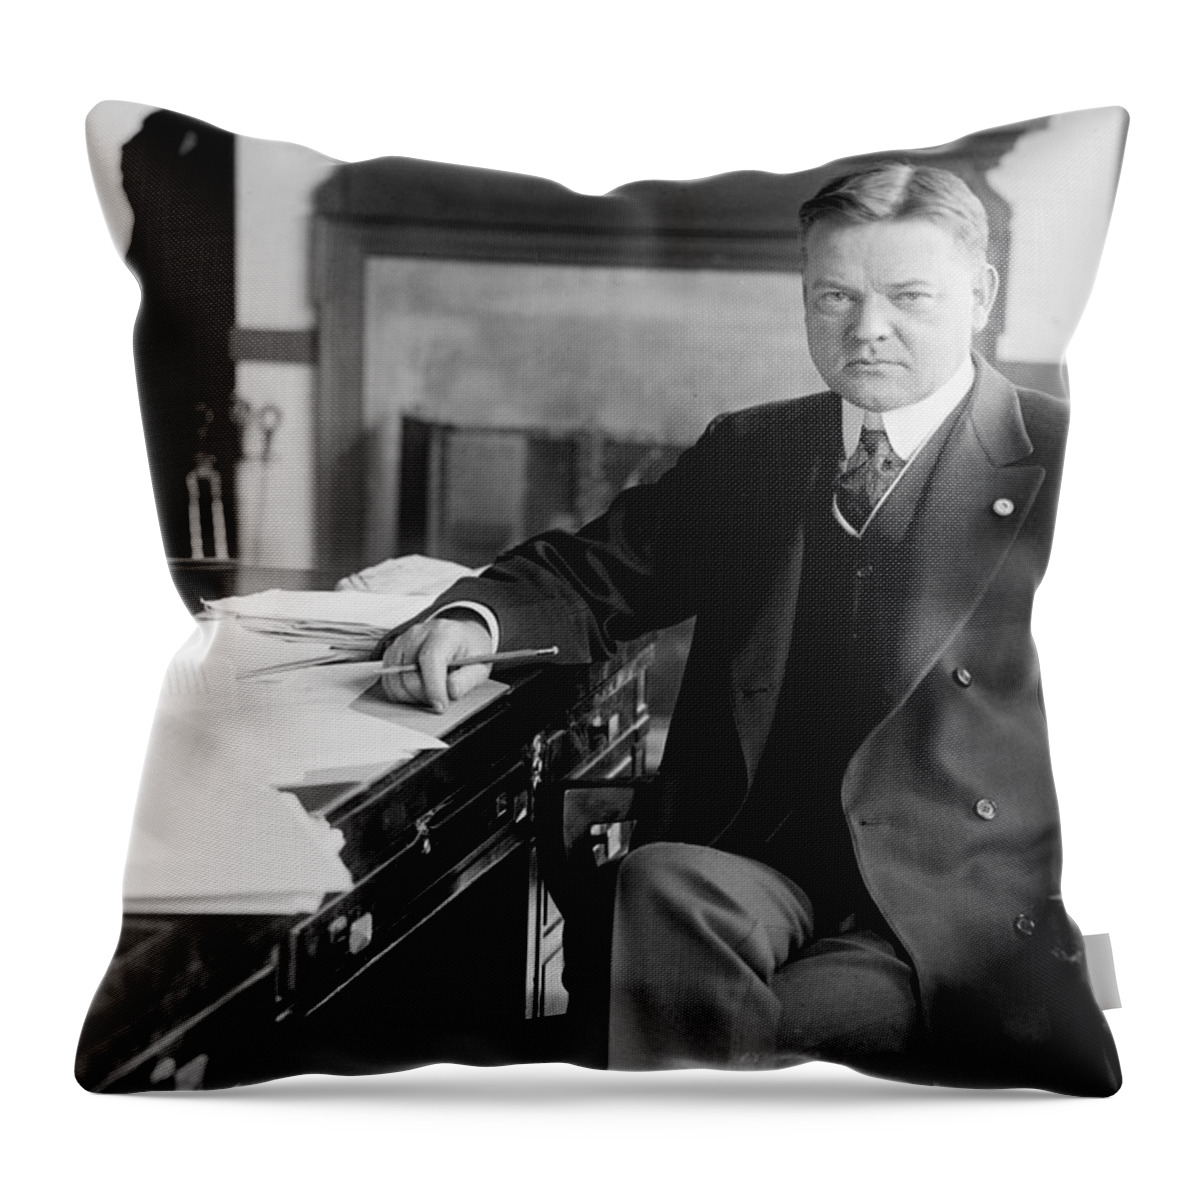 president Herbert Hoover Throw Pillow featuring the photograph President Herbert Hoover by International Images